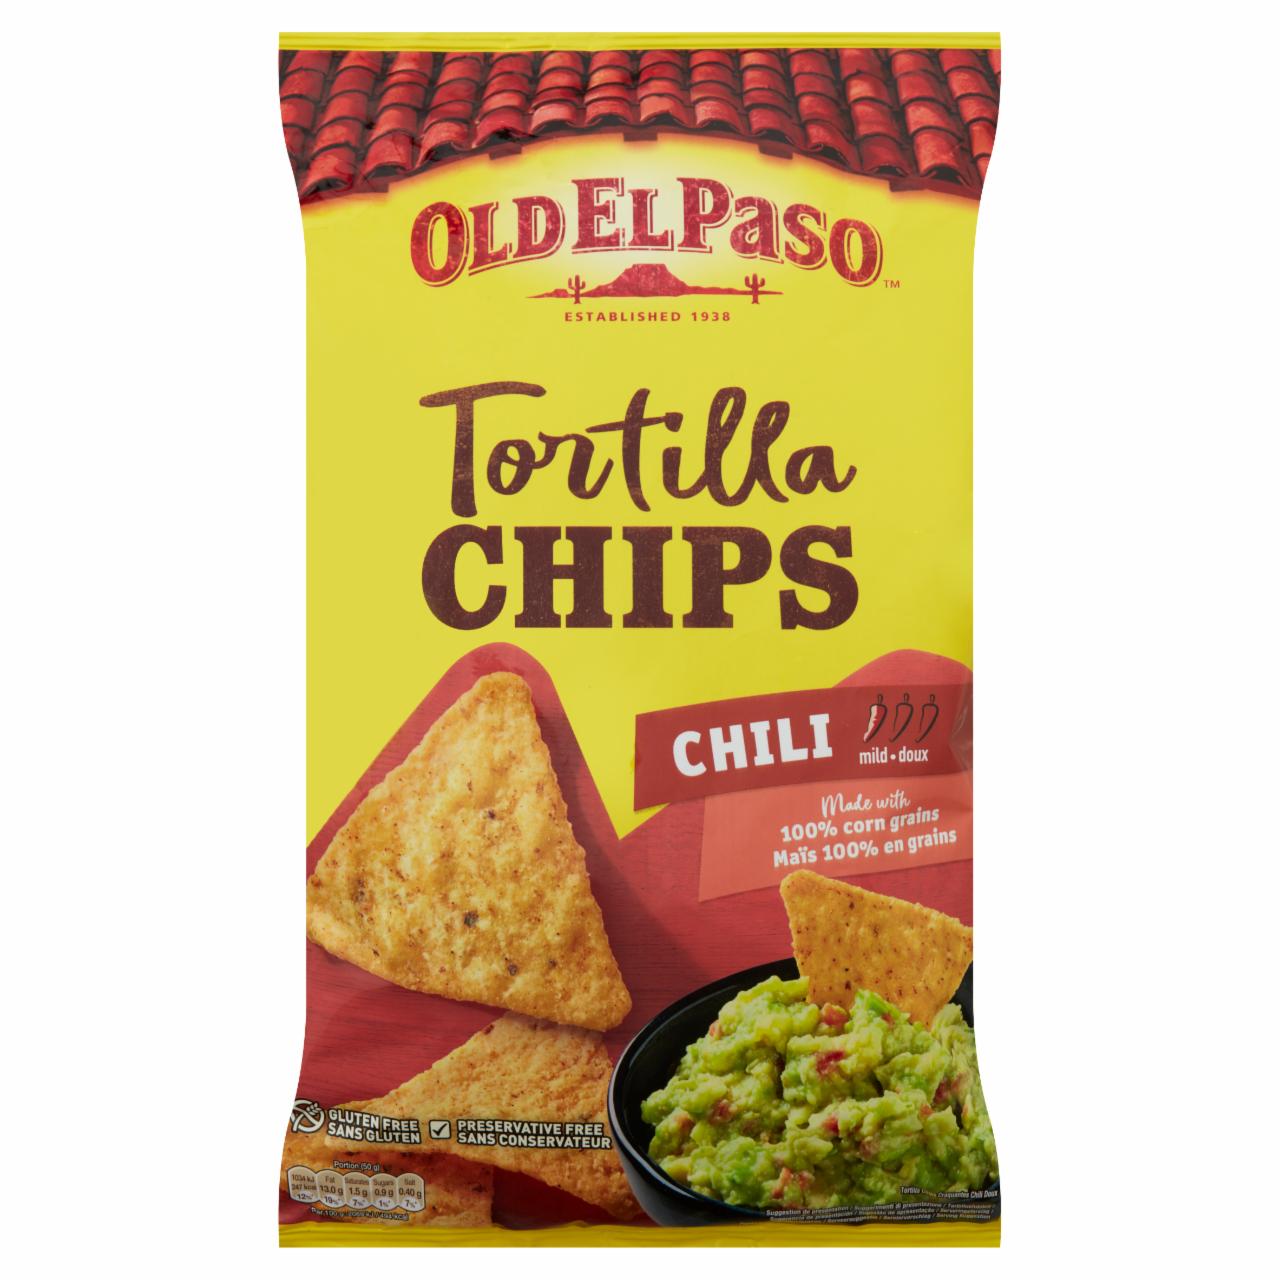 Képek - Old El Paso chili ízű kukoricatortilla snack 185 g